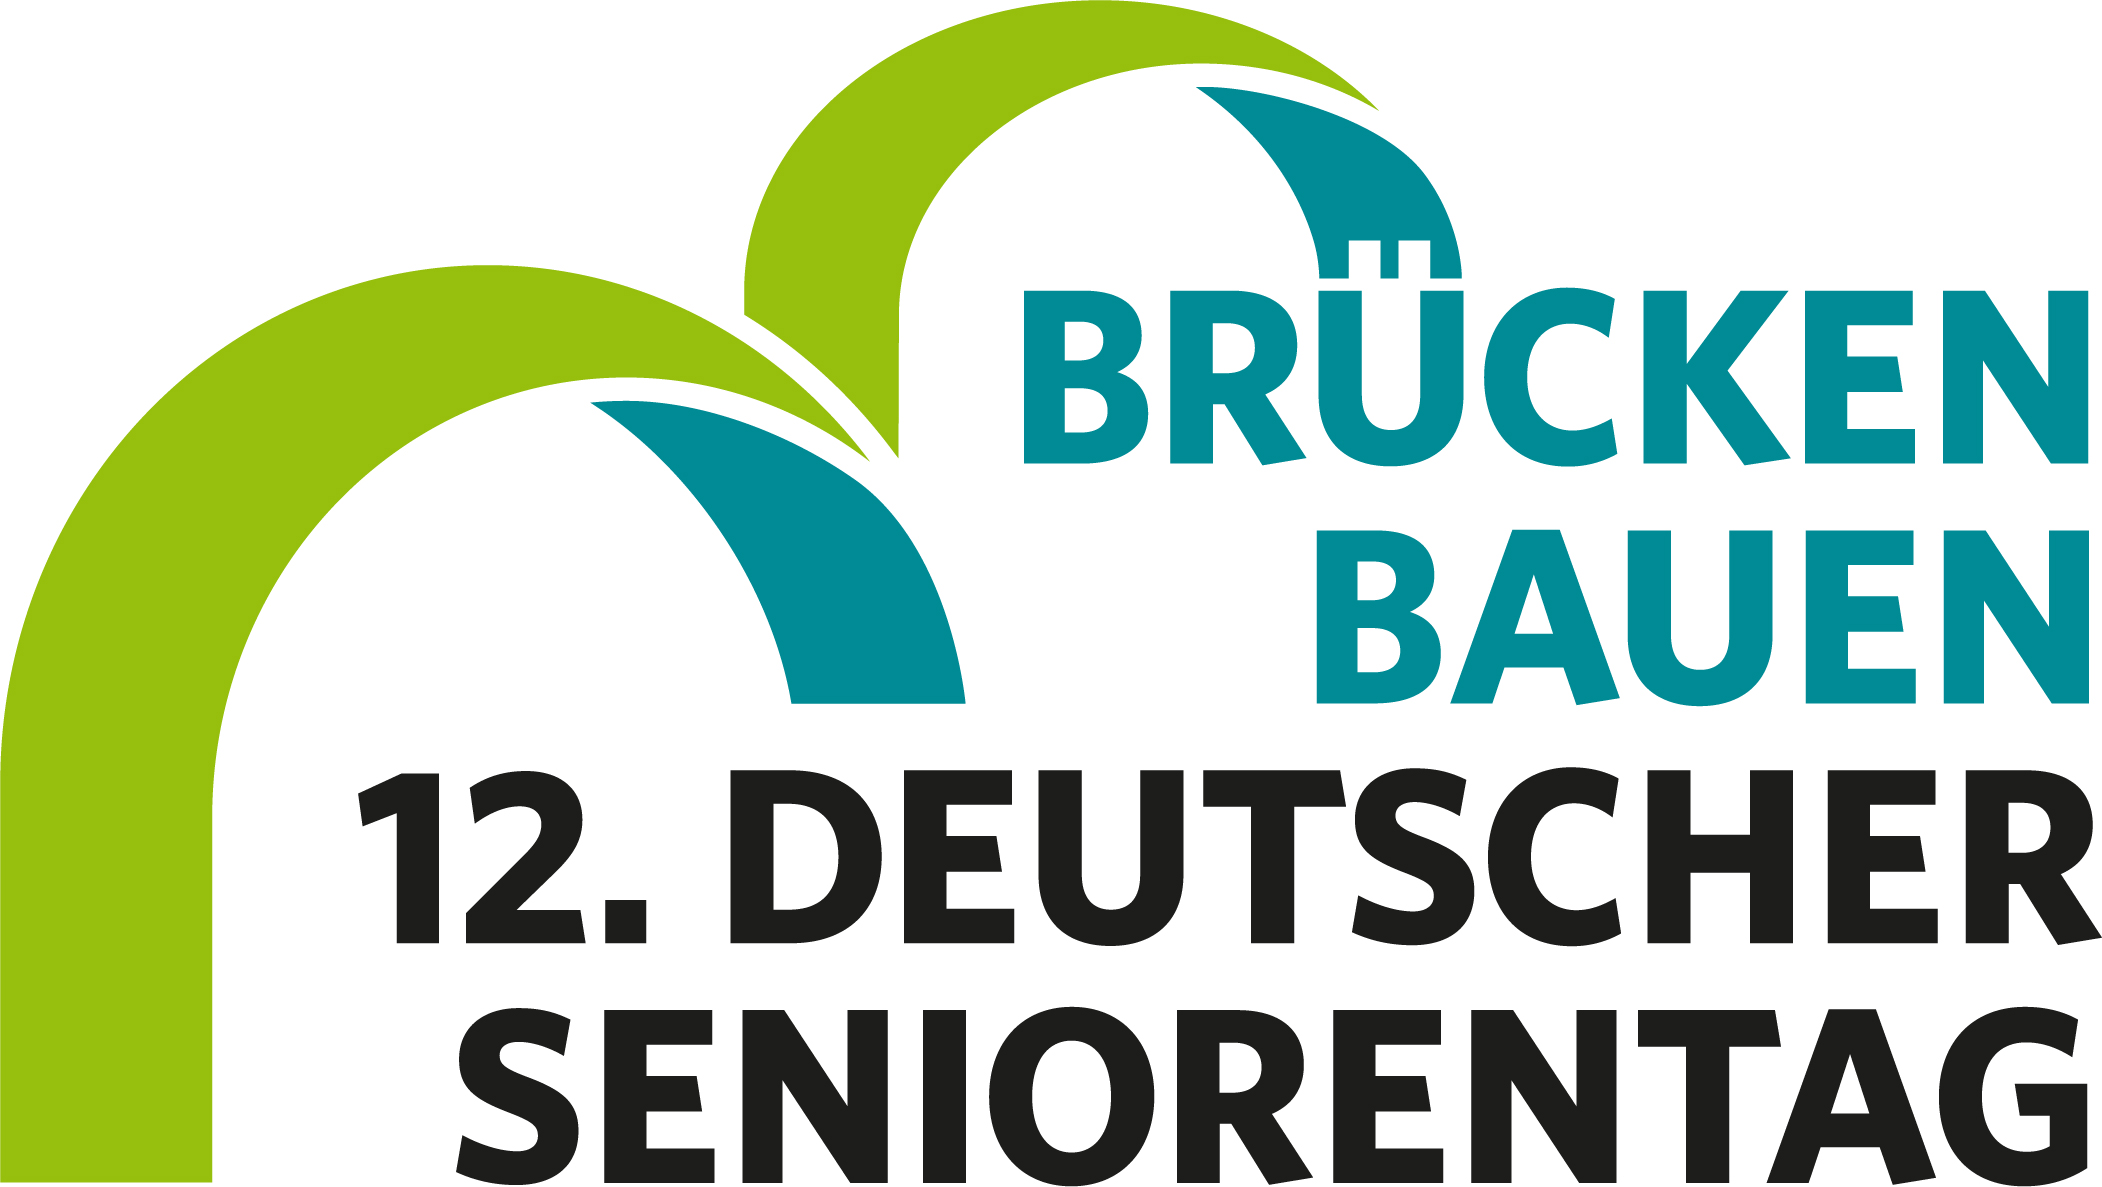 Text im Logo: Brücken Bauen 12. Deutscher Seniorentag